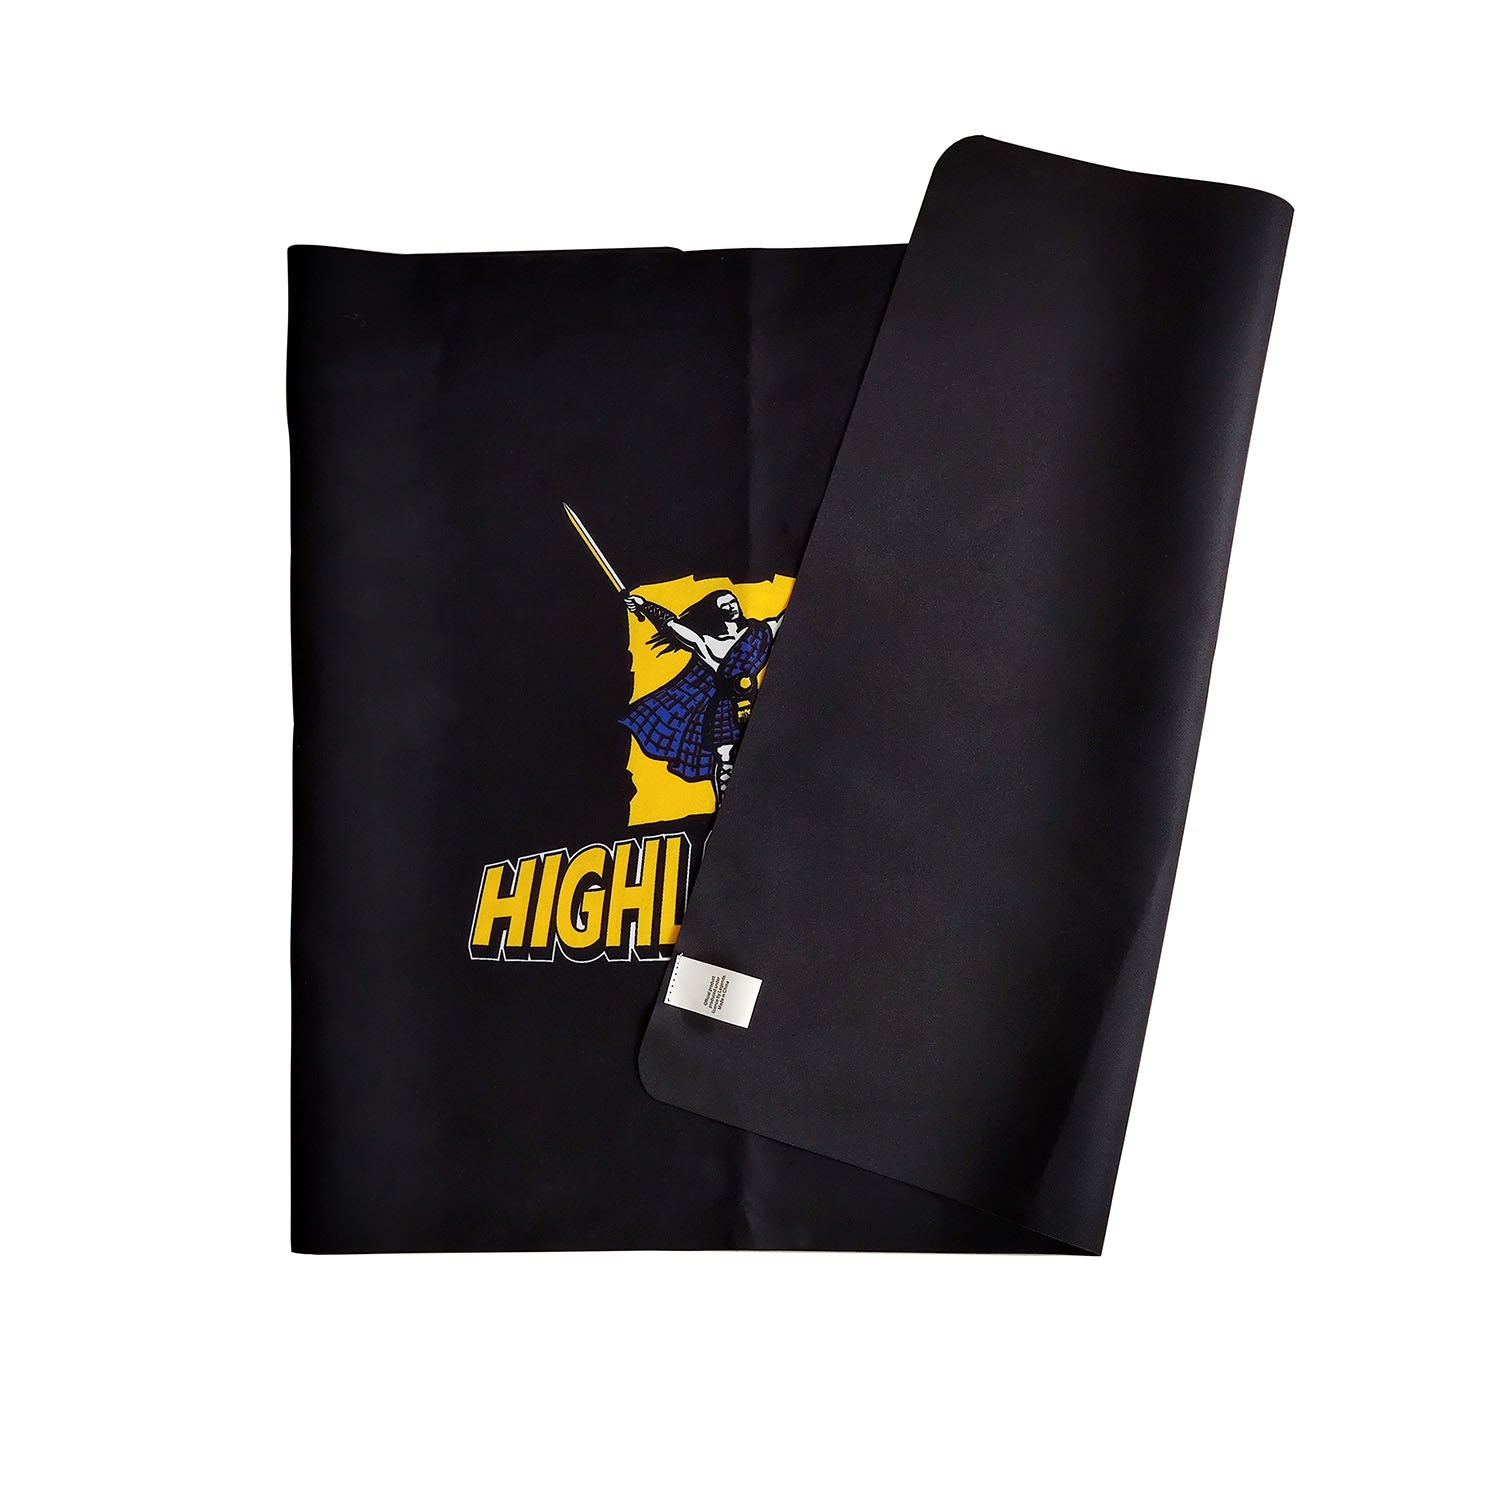 Highlanders Sport Towel